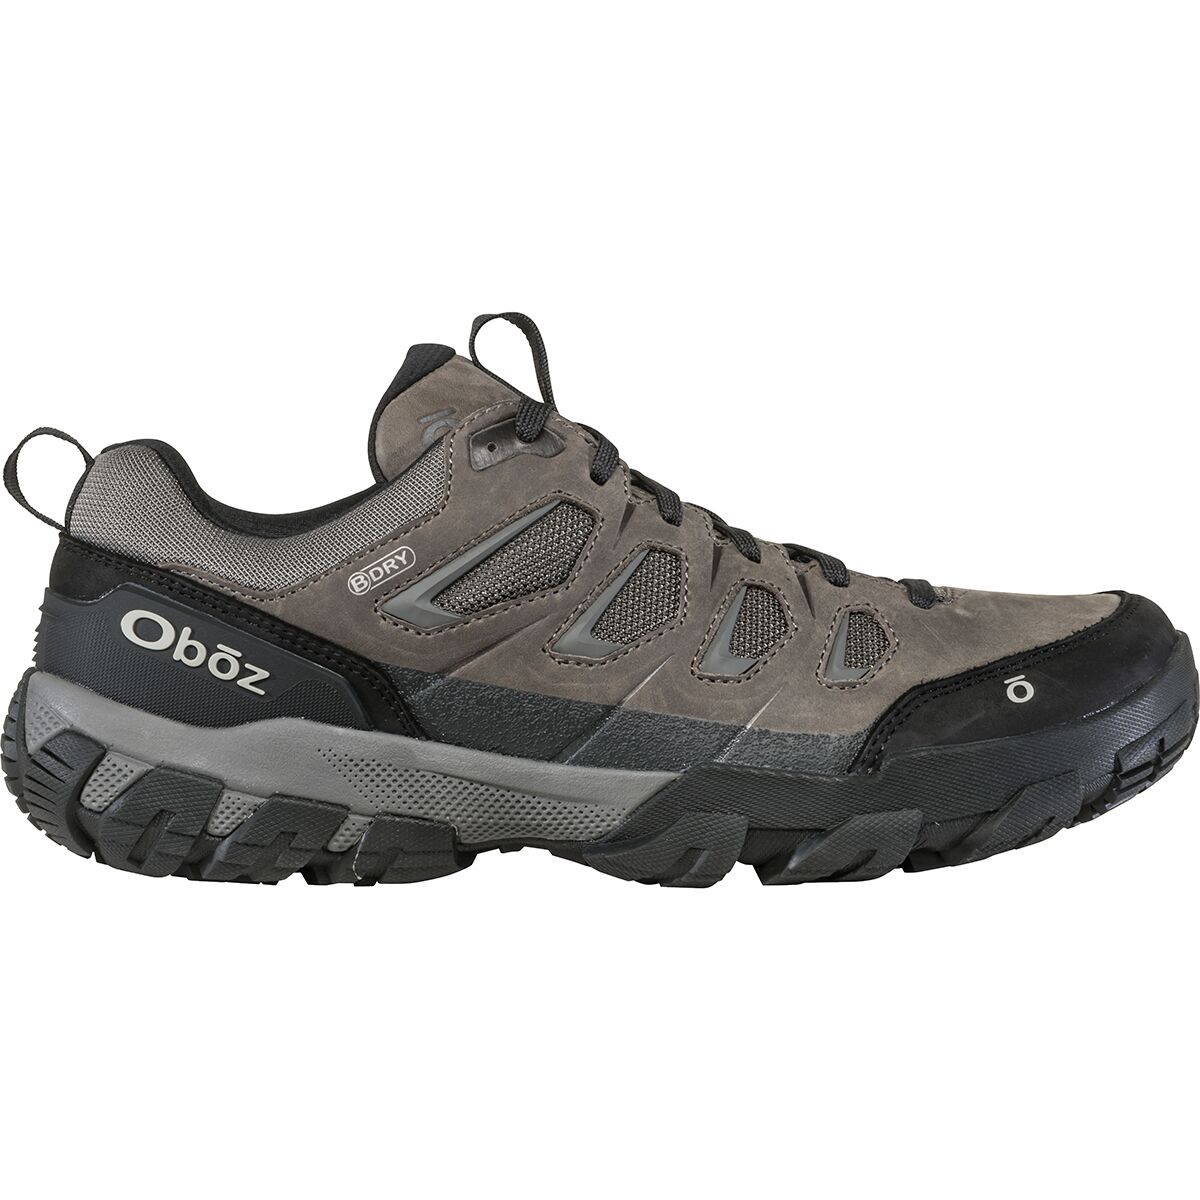 Oboz Sawtooth X Low B-Dry Shoe - Wide - Men's